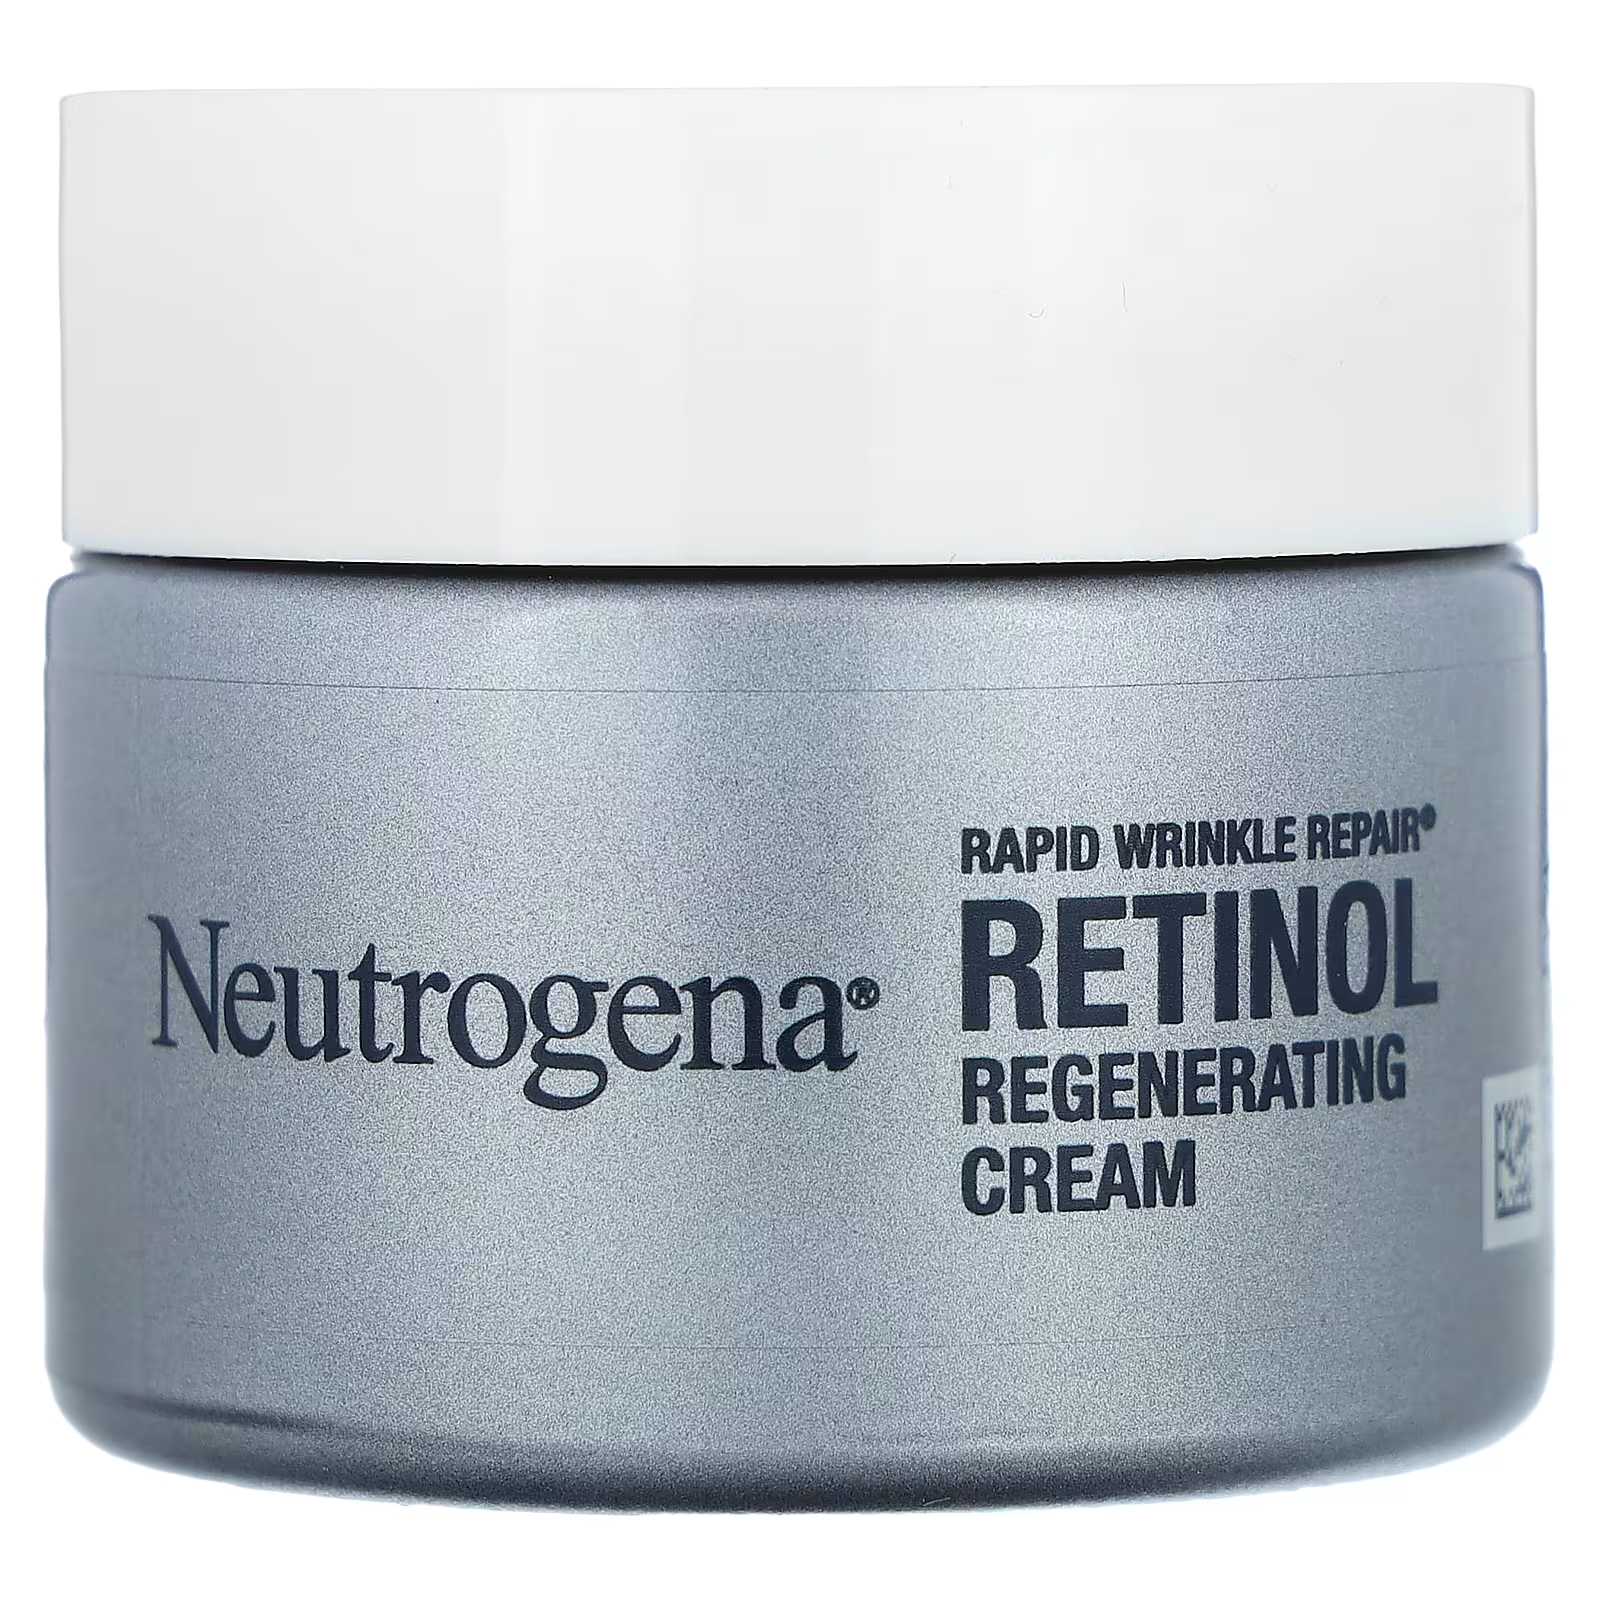 Крем регенерирующий Neutrogena Rapid Wrinkle Repair с ретинолом, 48 г neutrogena rapid wrinkle repair восстанавливающий крем 48 г 1 7 унции